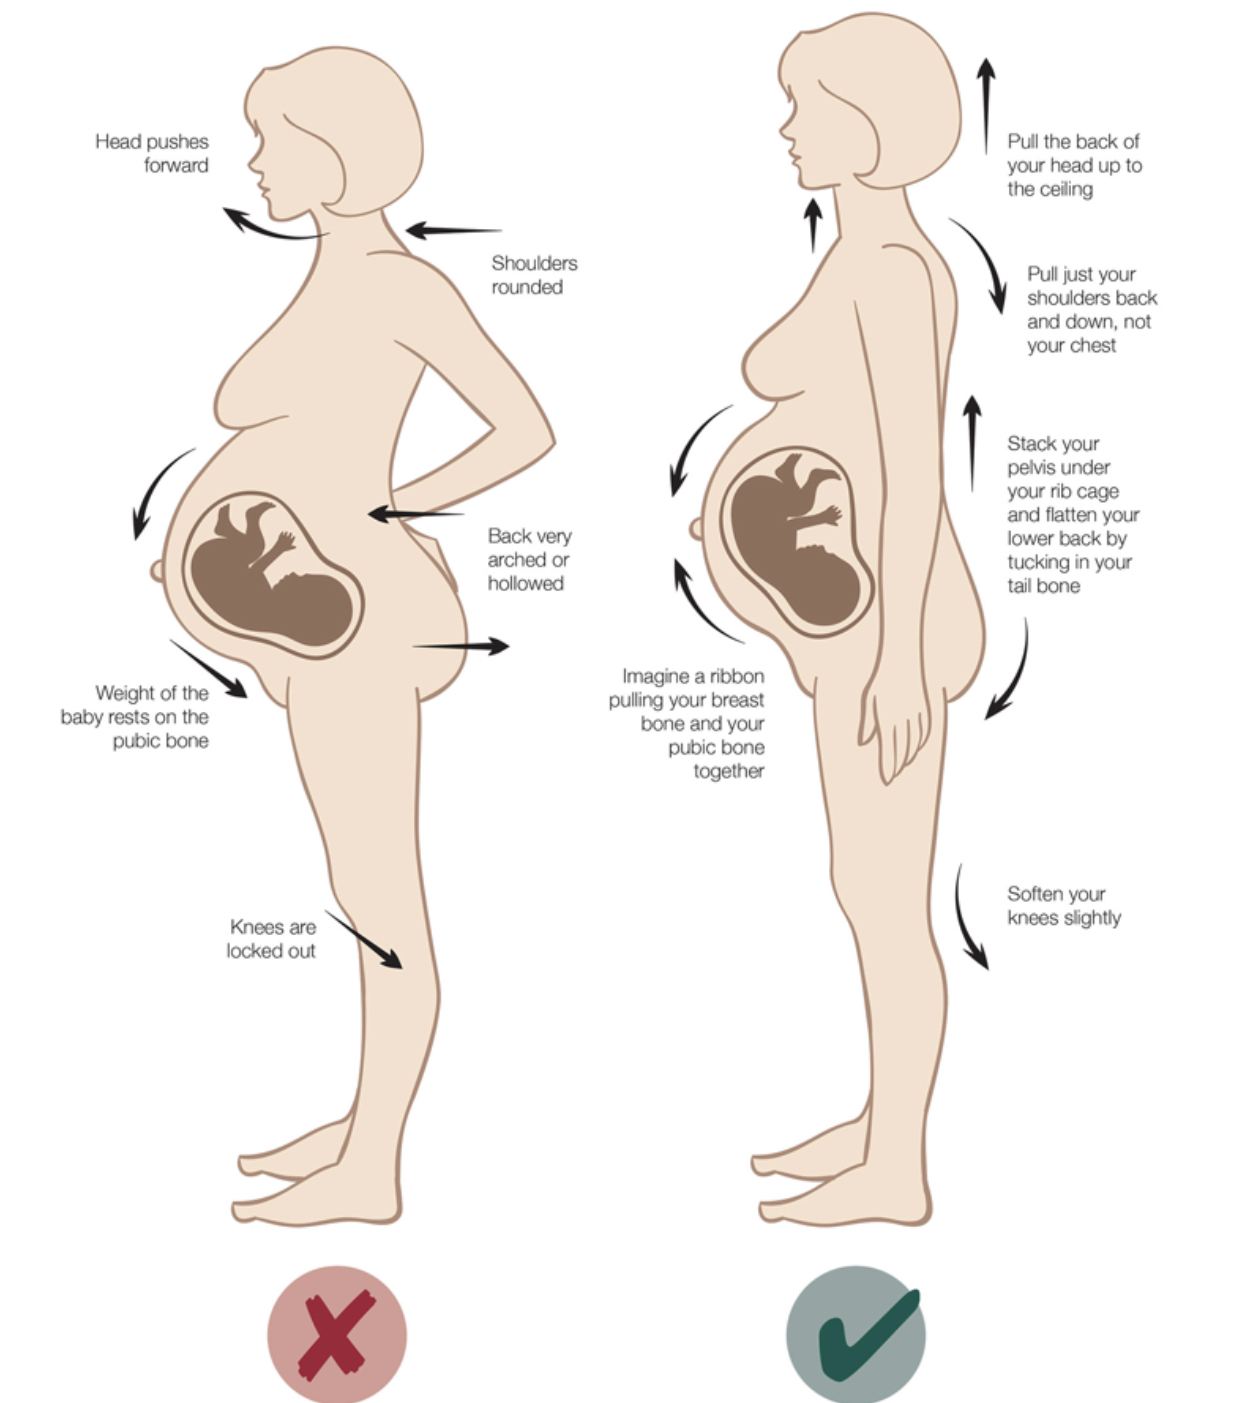 37 недель боли форум. Болит поясница при беременности. Расположение органов у беременных 2 триместр. Позвоночник беременной женщины. Болит в тазовой части у беременных.